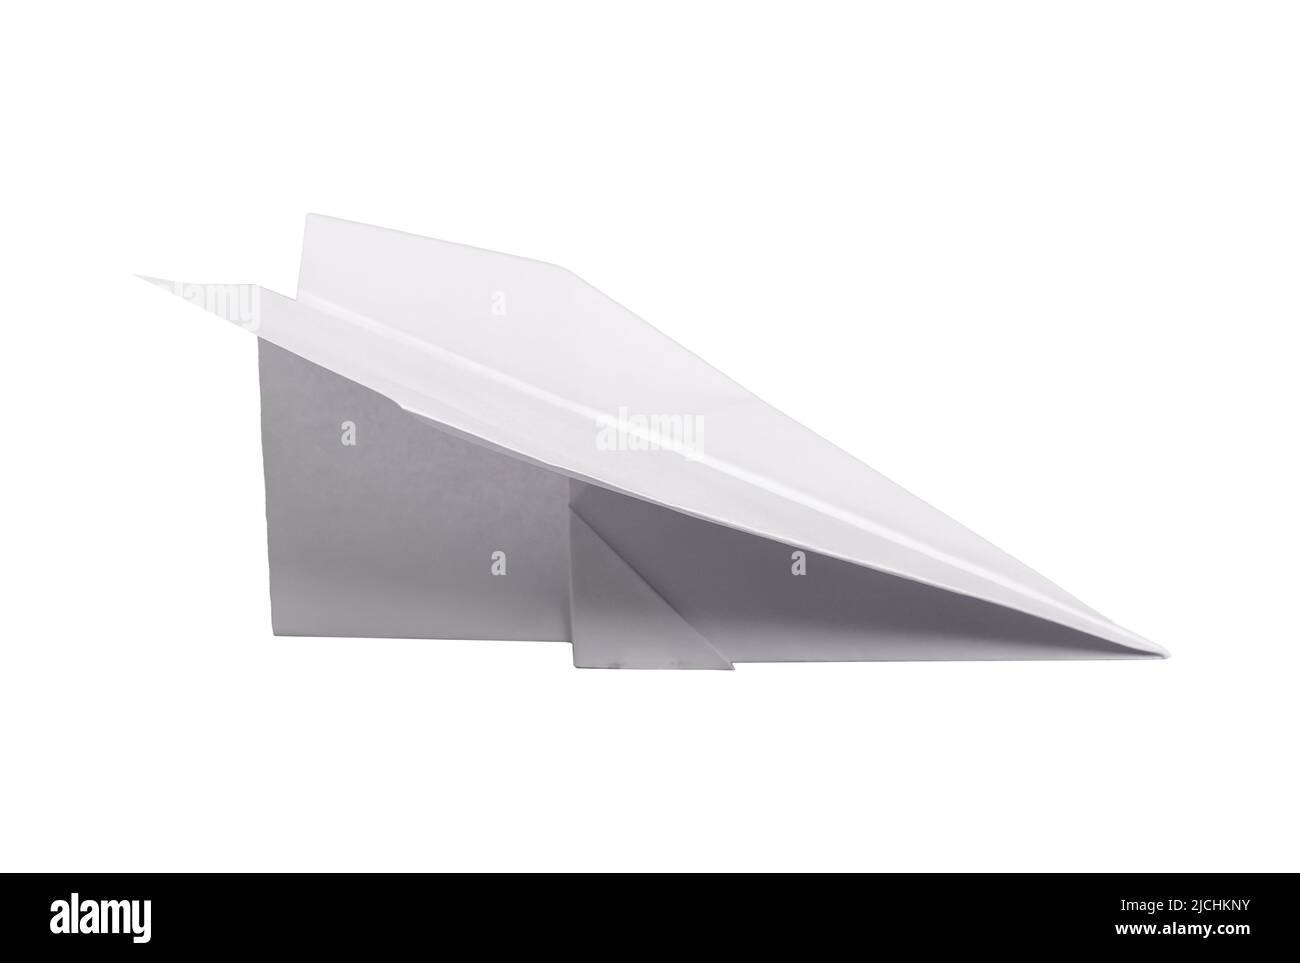 Origami-Ebene isoliert auf weißem Hintergrund. Papierfaltkunst. Symbol der Kindheit, des Träumens, der Freiheit, der Phantasie, der Kreativität. Hochwertige Fotos Stockfoto